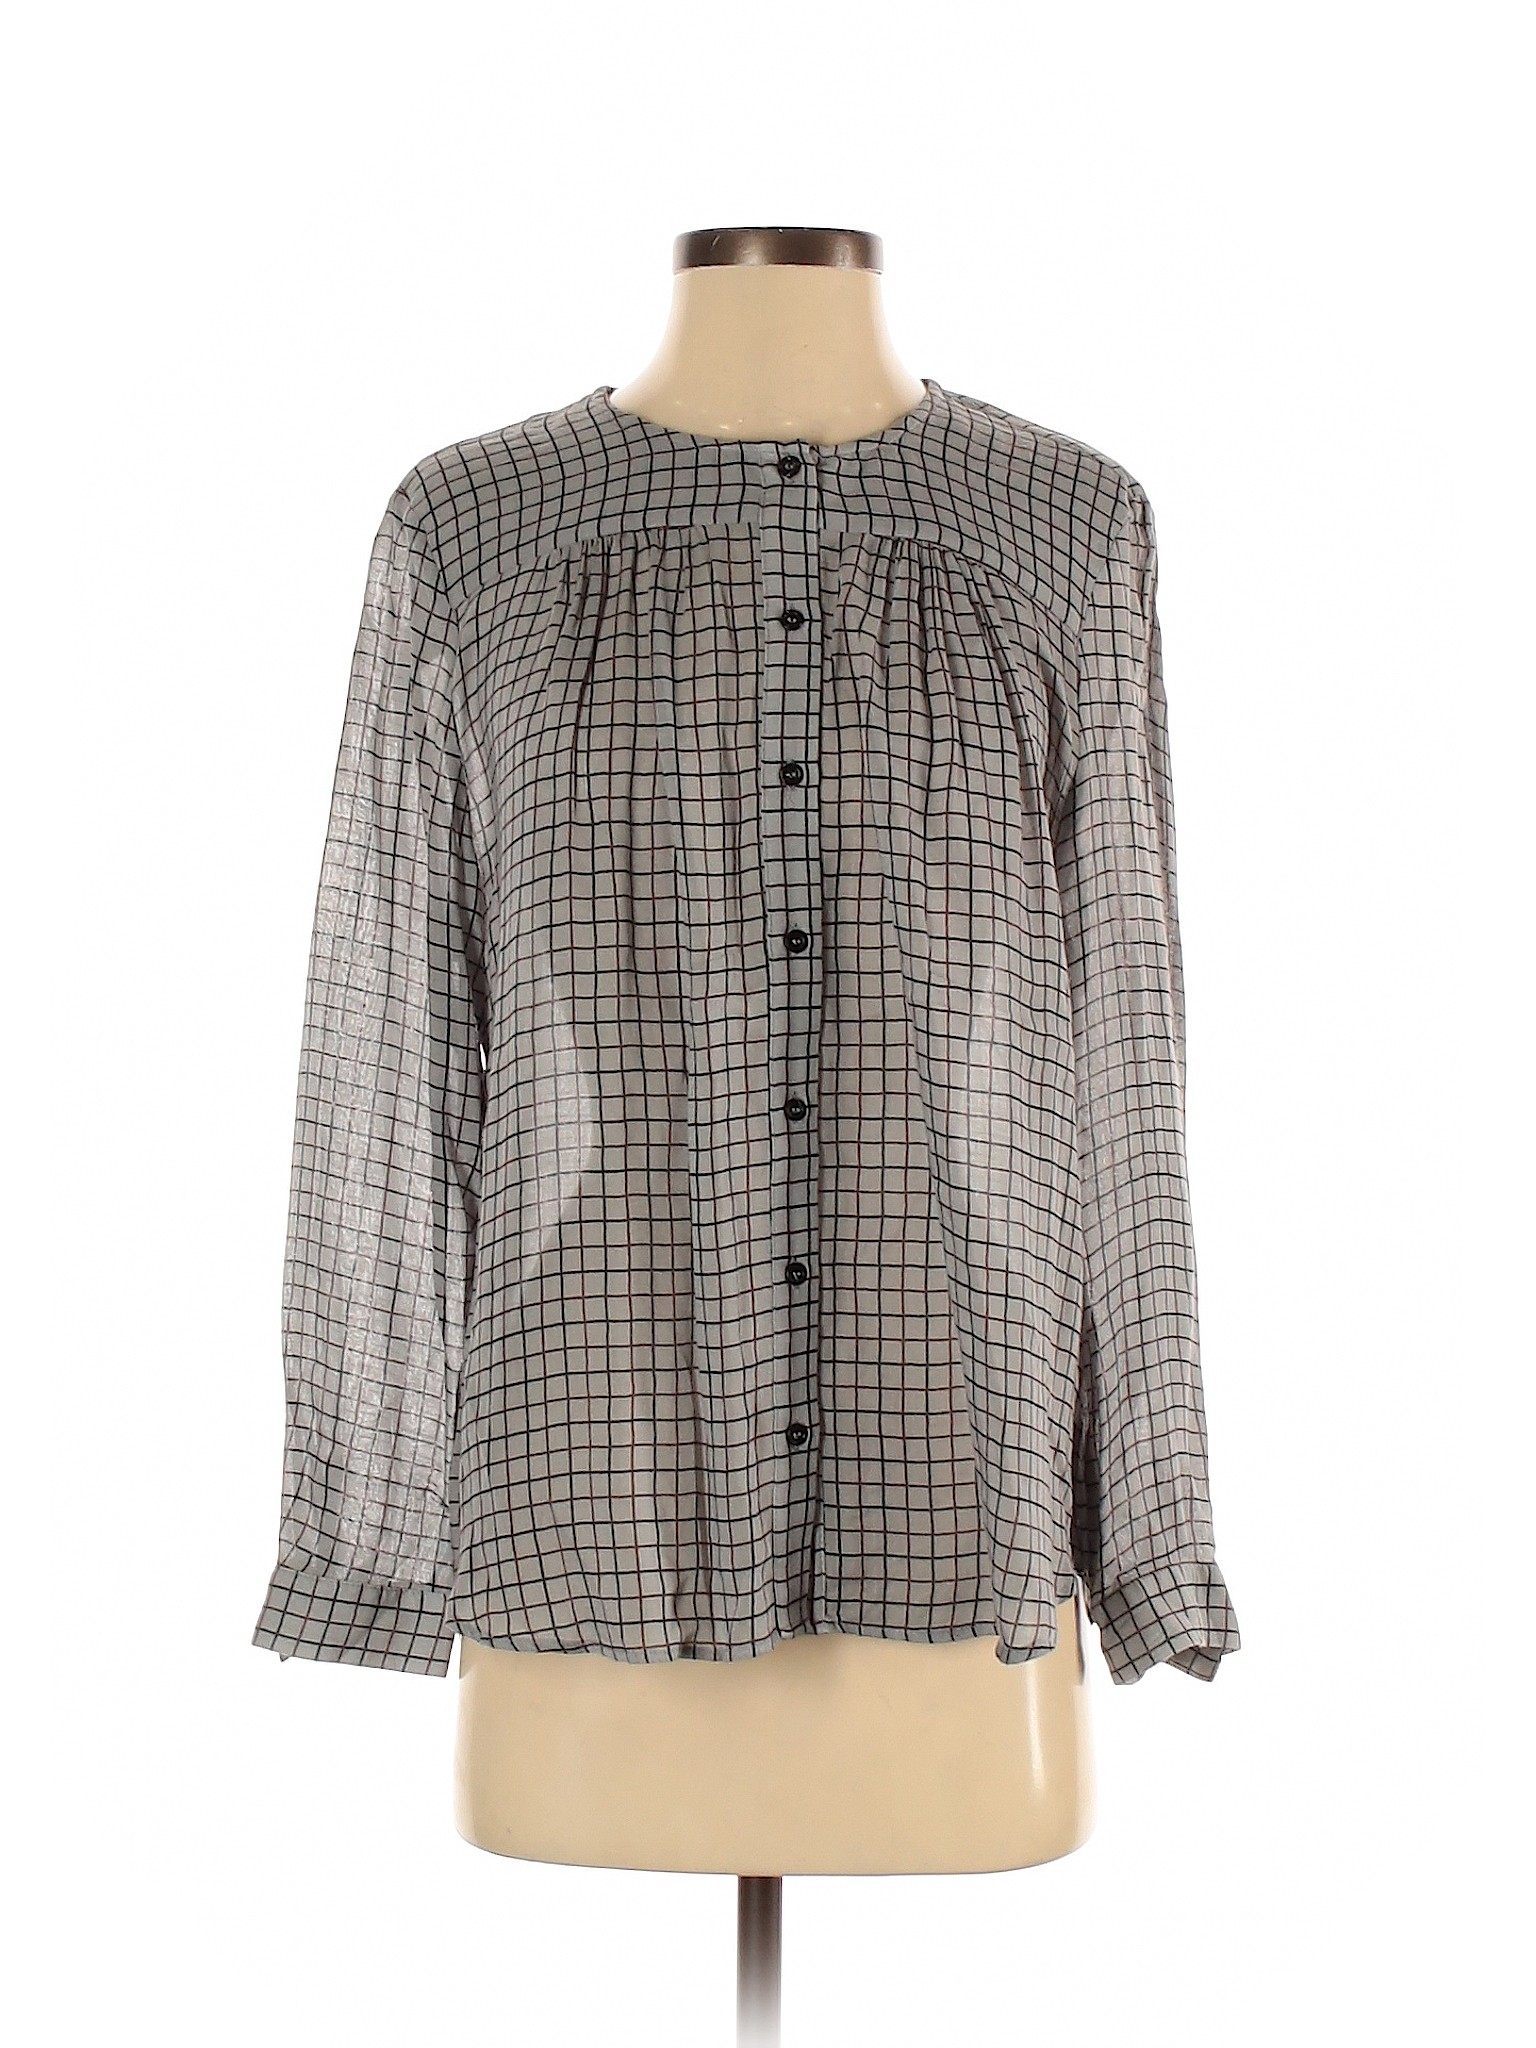 Zara Women Gray Long Sleeve Button-Down Shirt XS | eBay